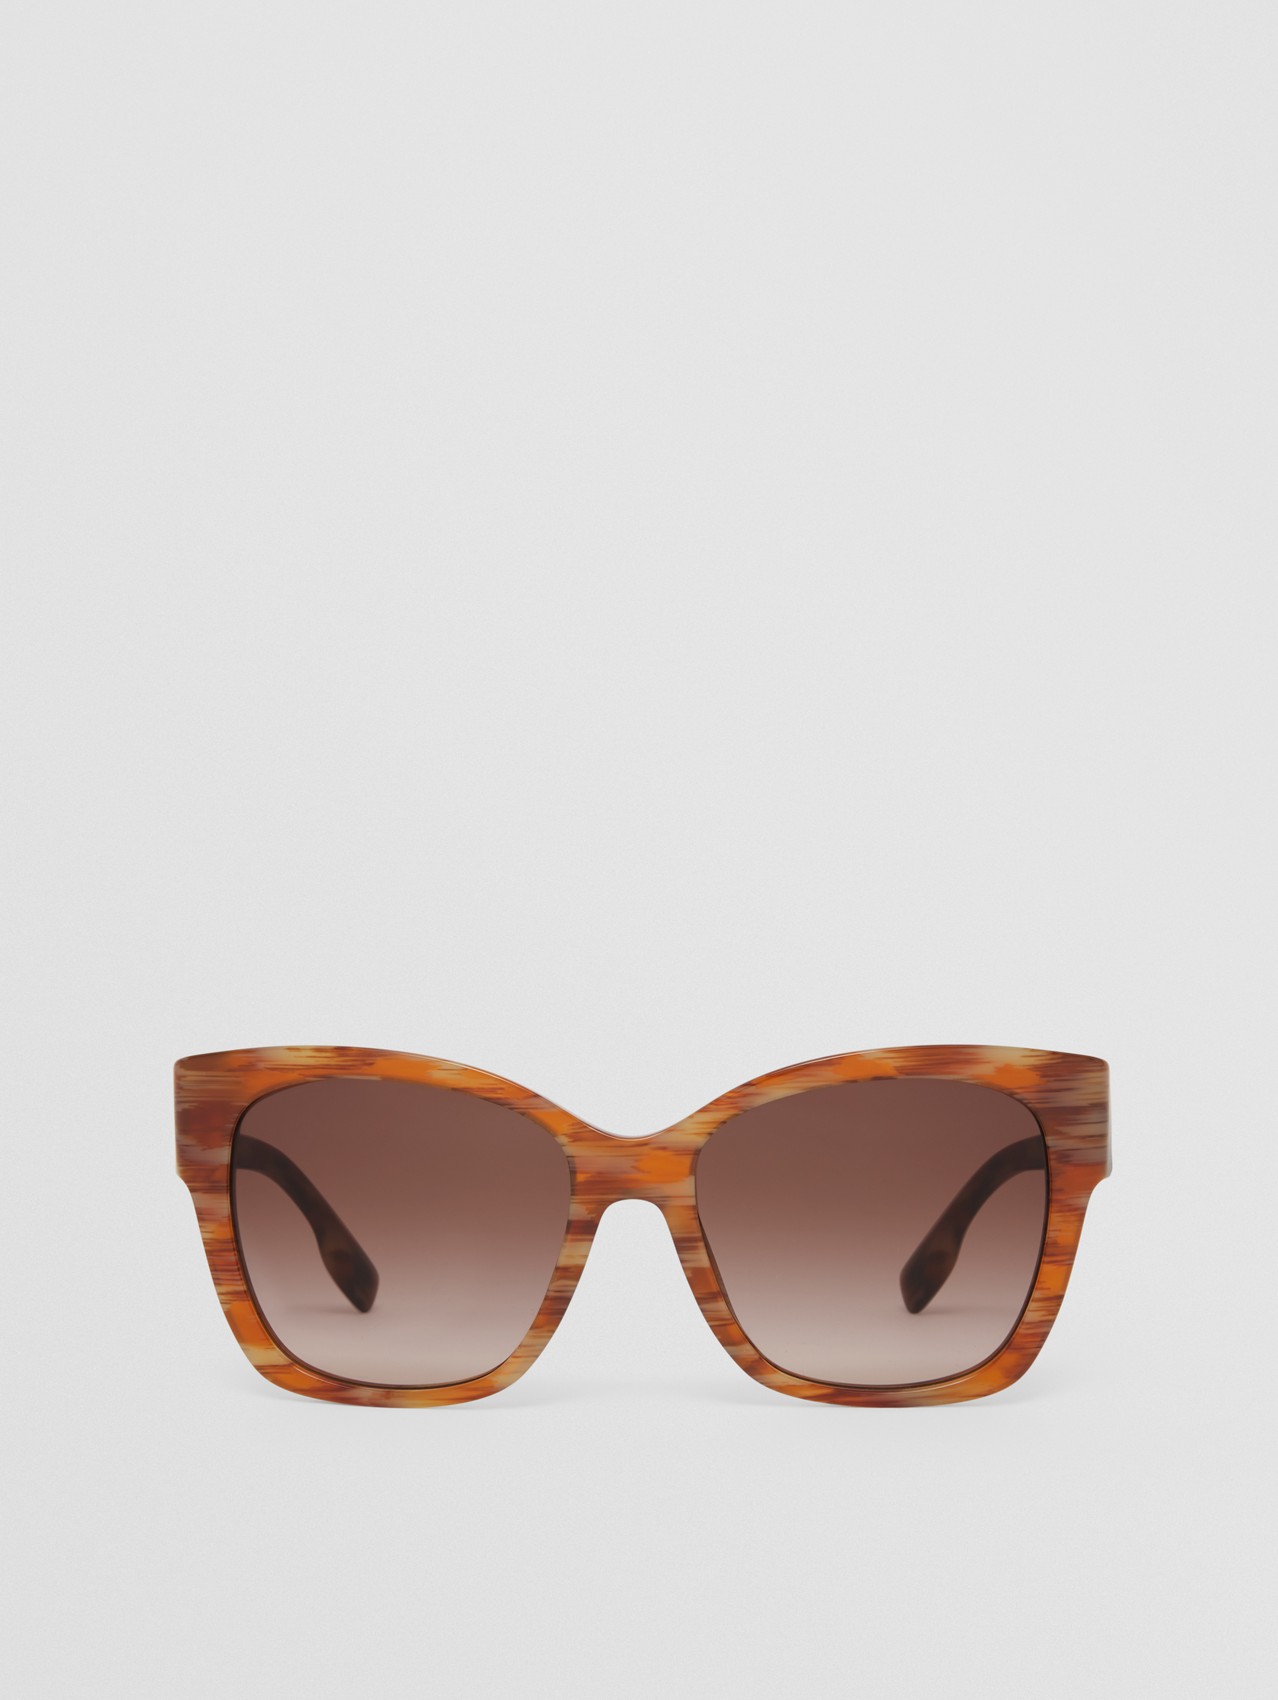 Monogram Motif Square Frame Sunglasses in Deer Print